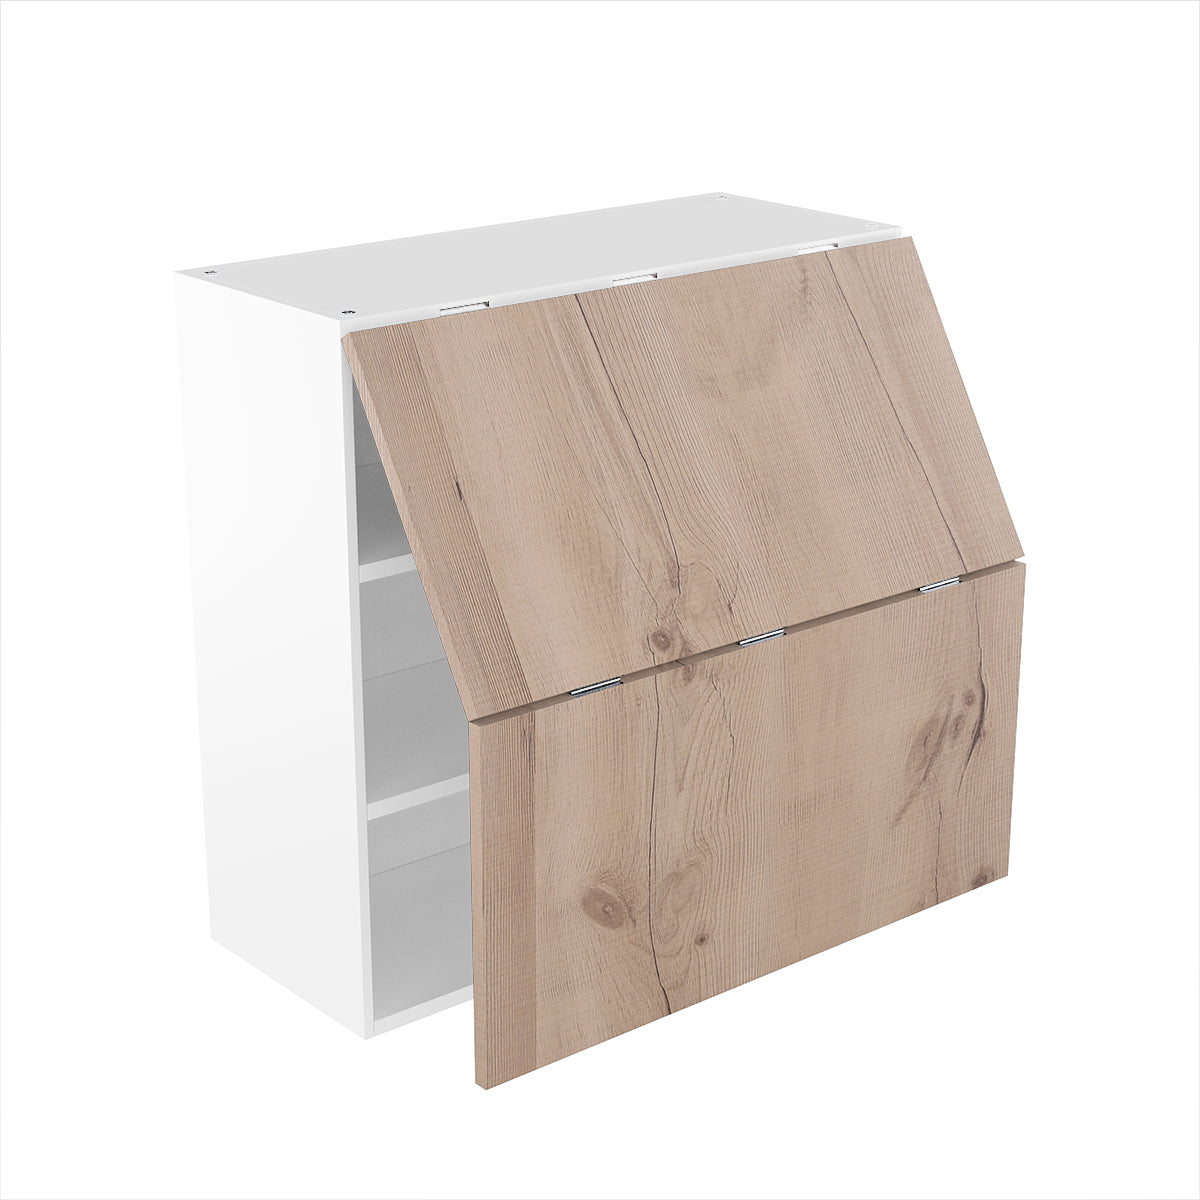 RTA - Rustic Oak - Bi-Fold Door Wall Cabinets | 30"W x 30"H x 12"D